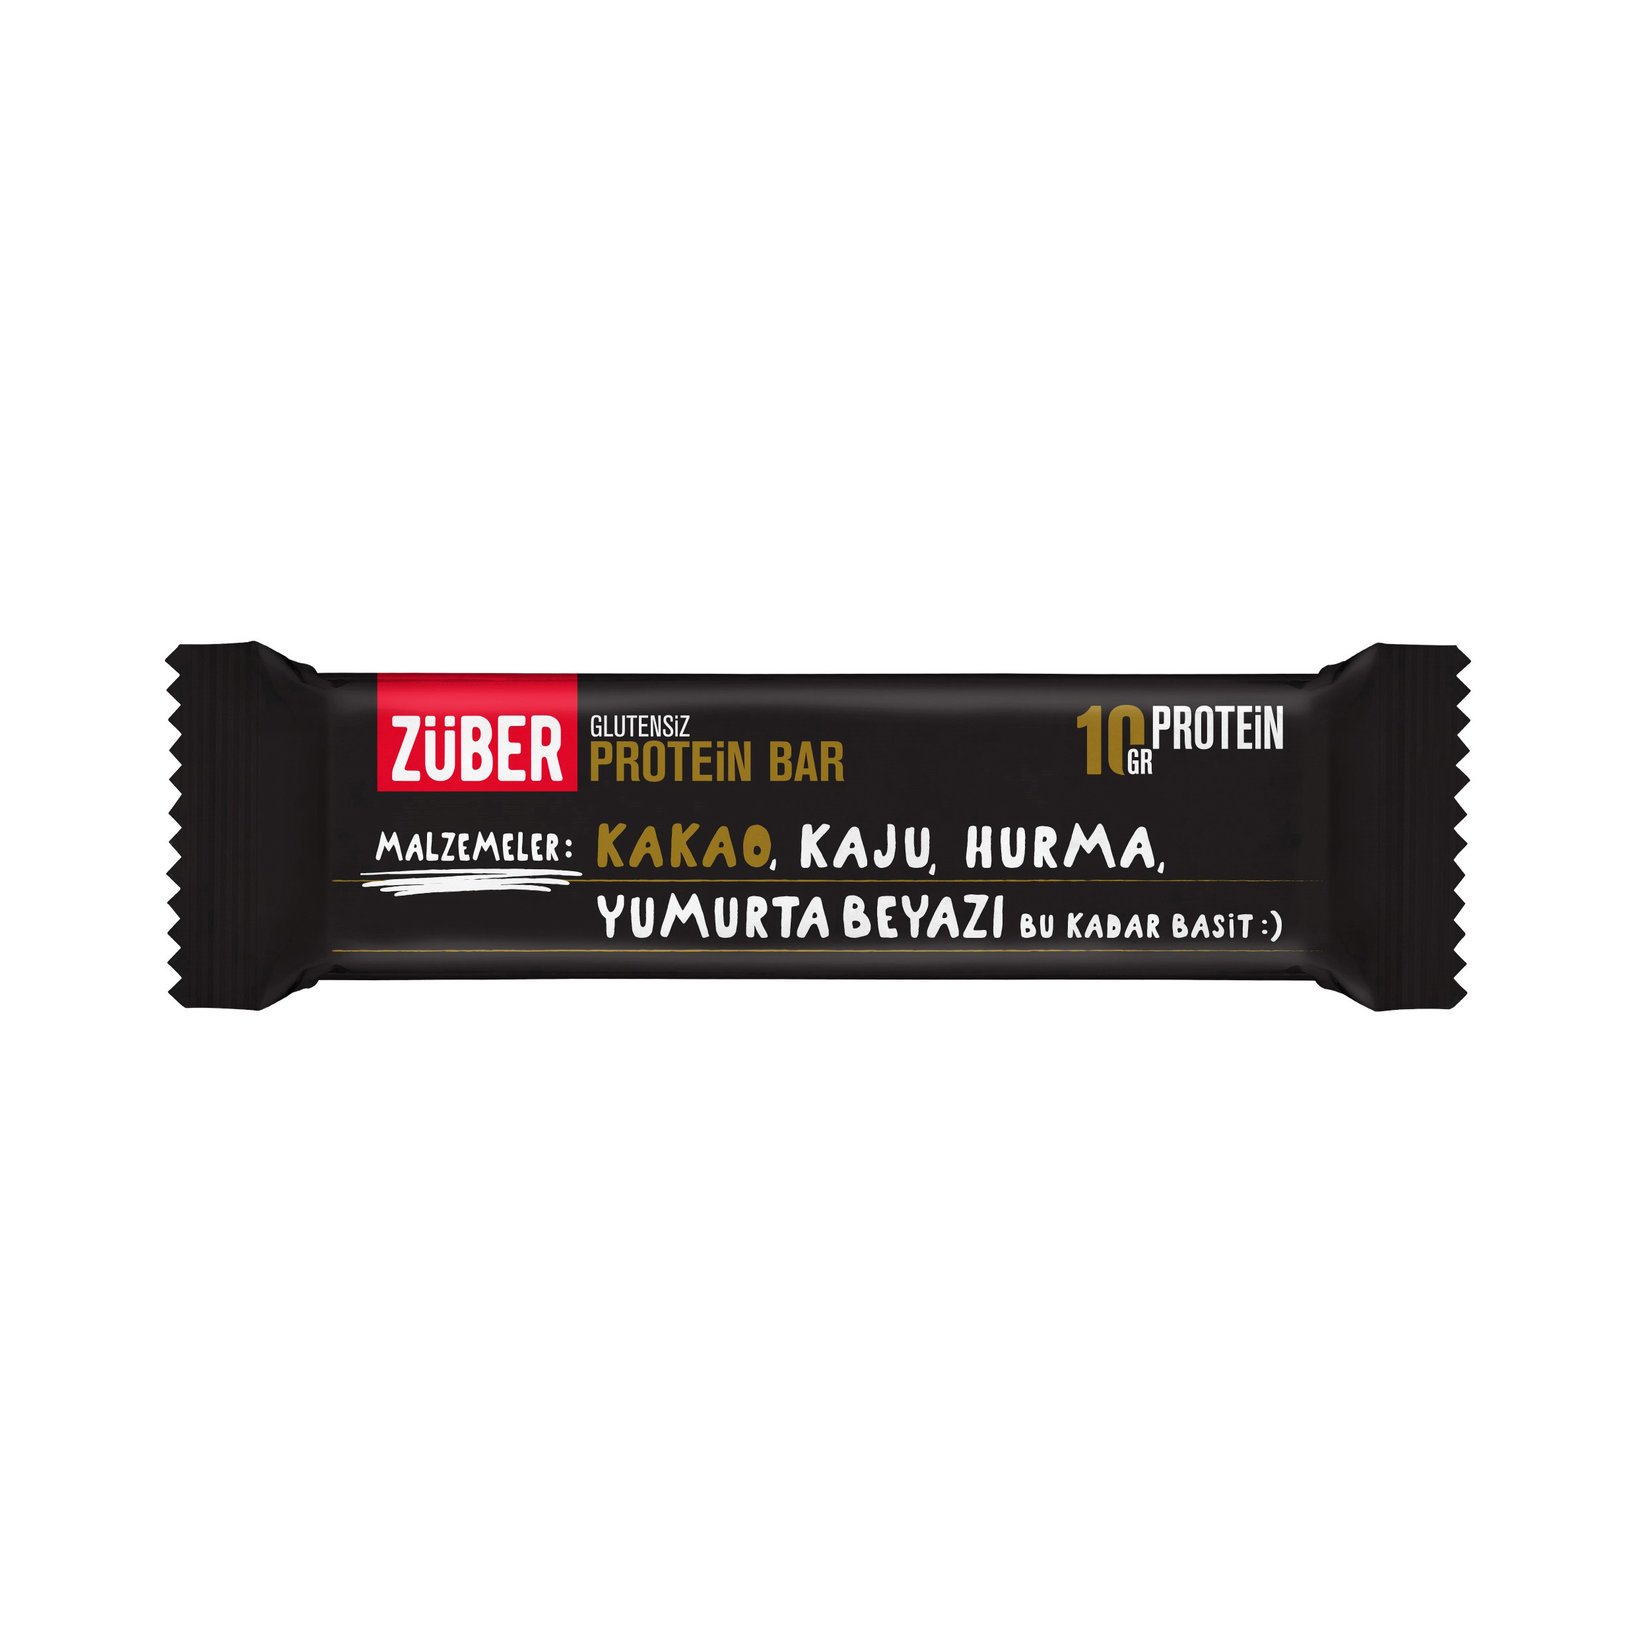 Züber Glutensiz Protein Barı Kakaolu 35 G